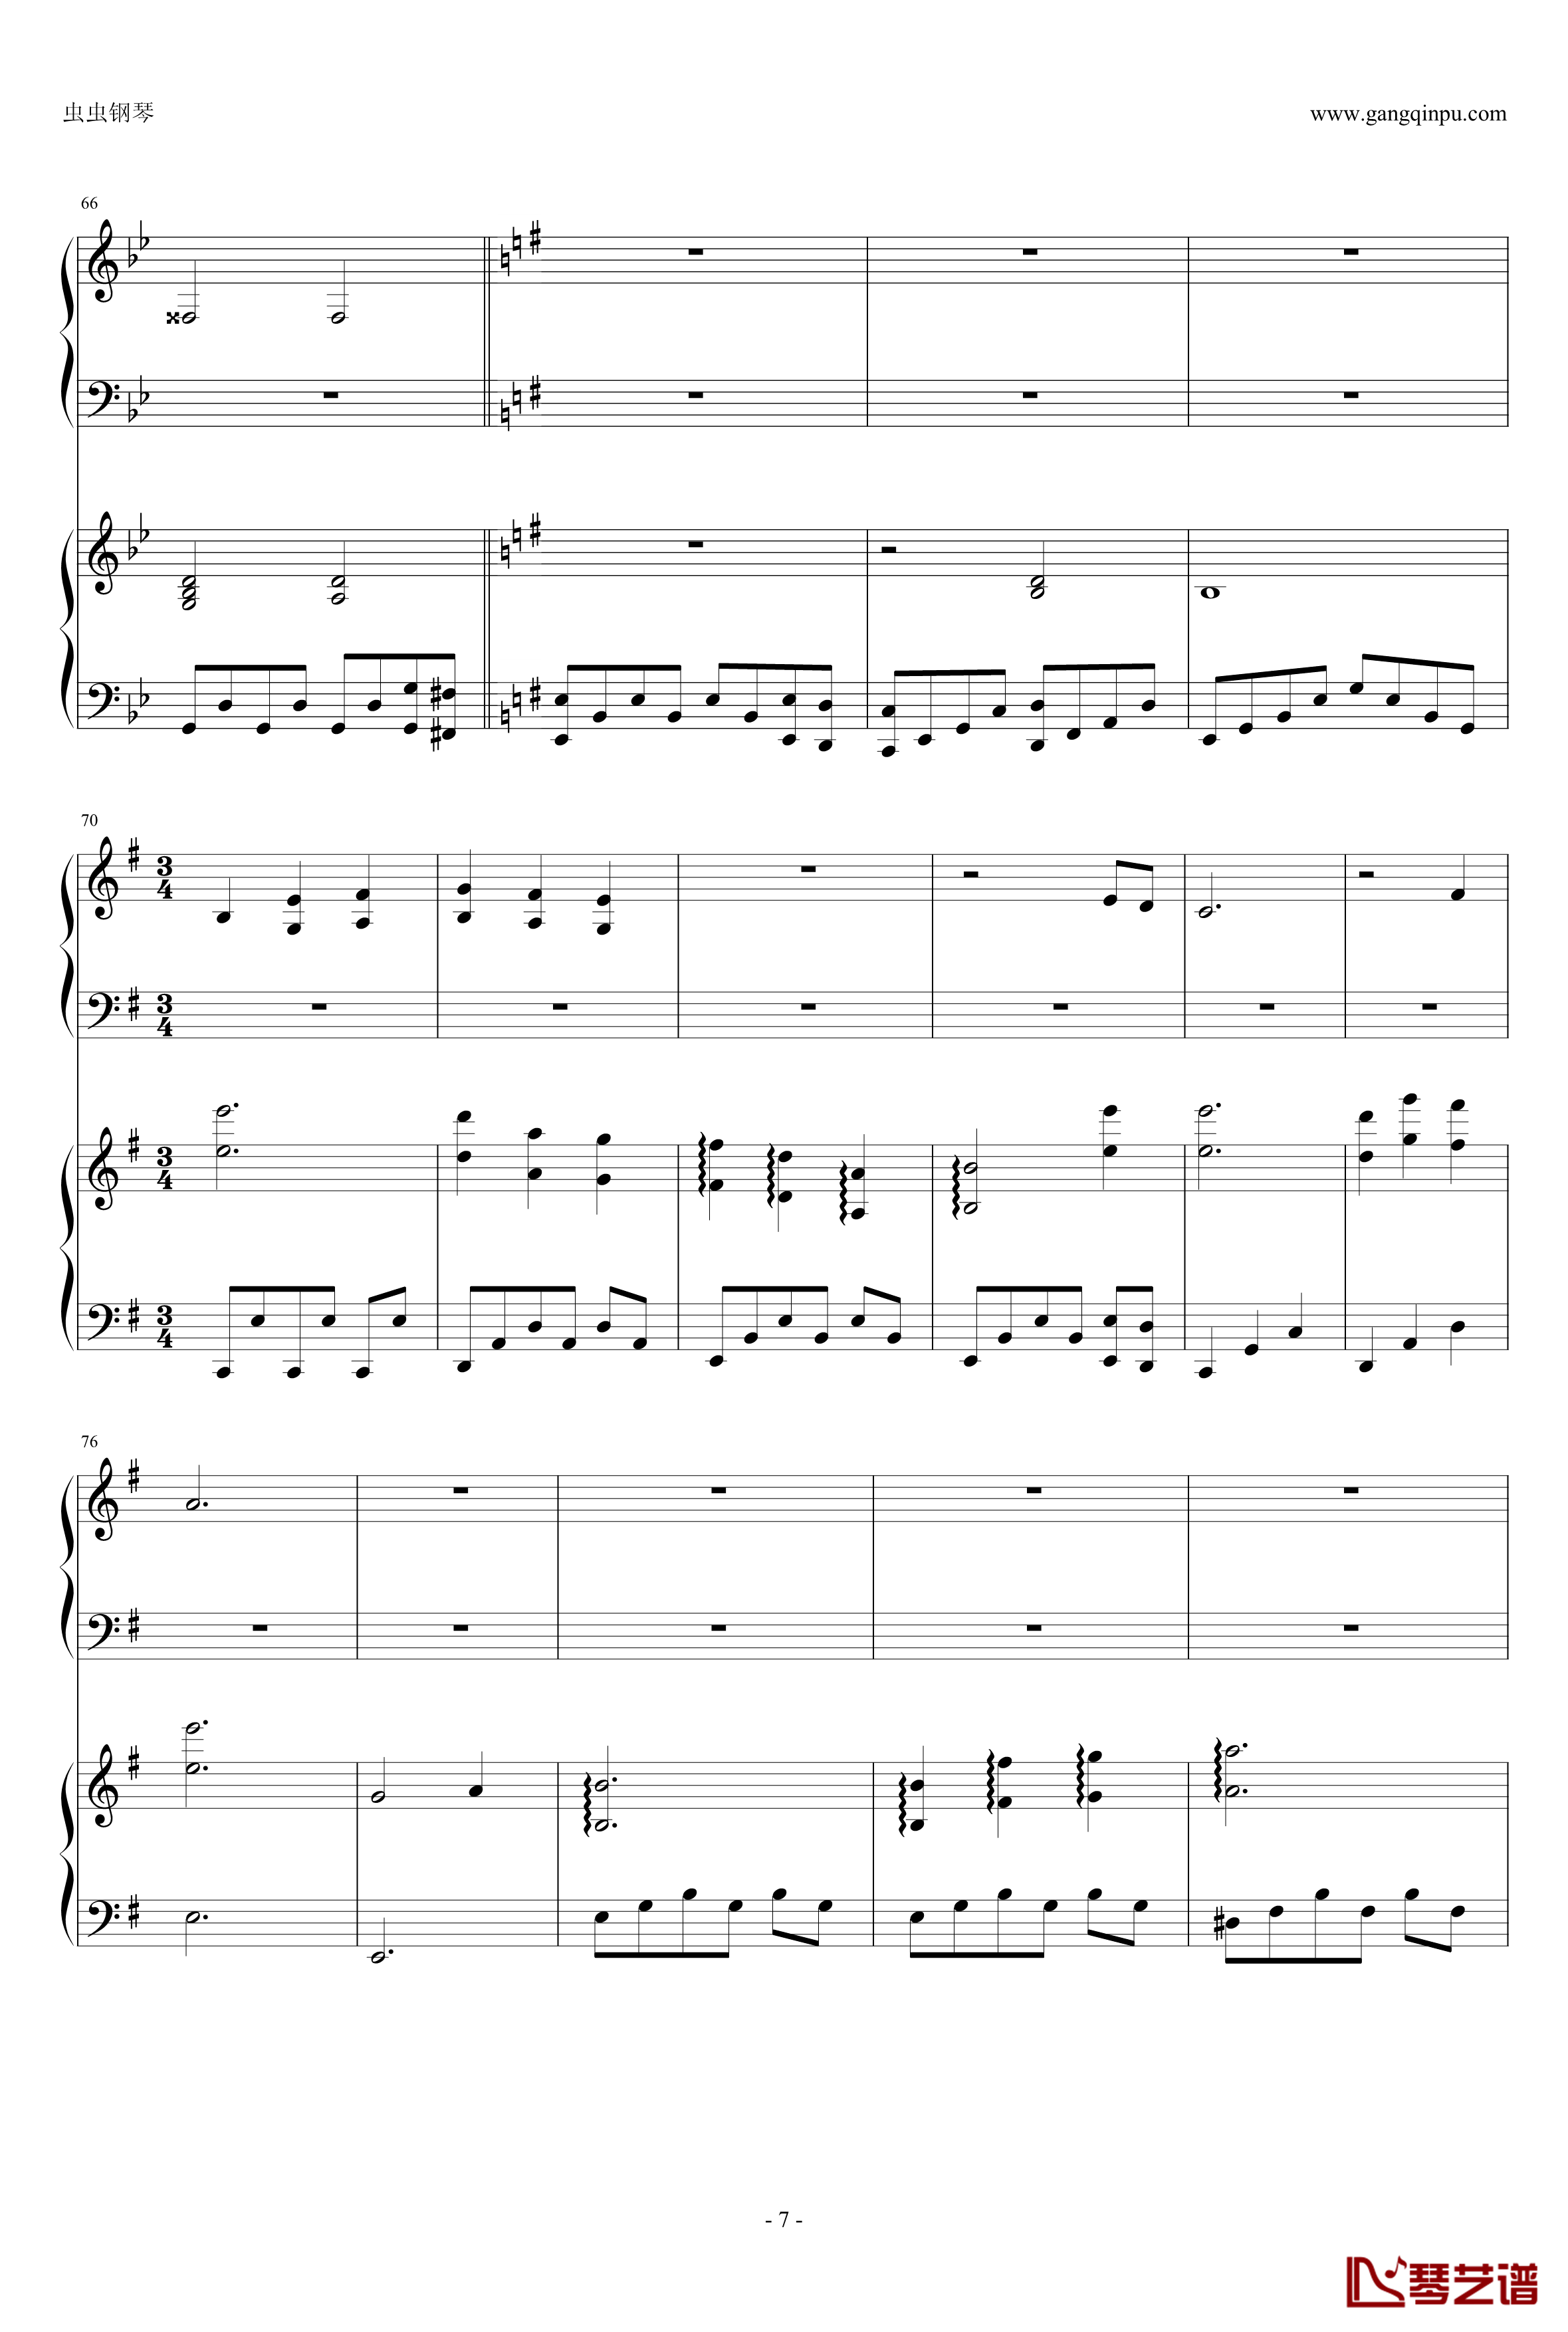 東方連奏曲II Pianoforte钢琴谱-第一部分-东方project